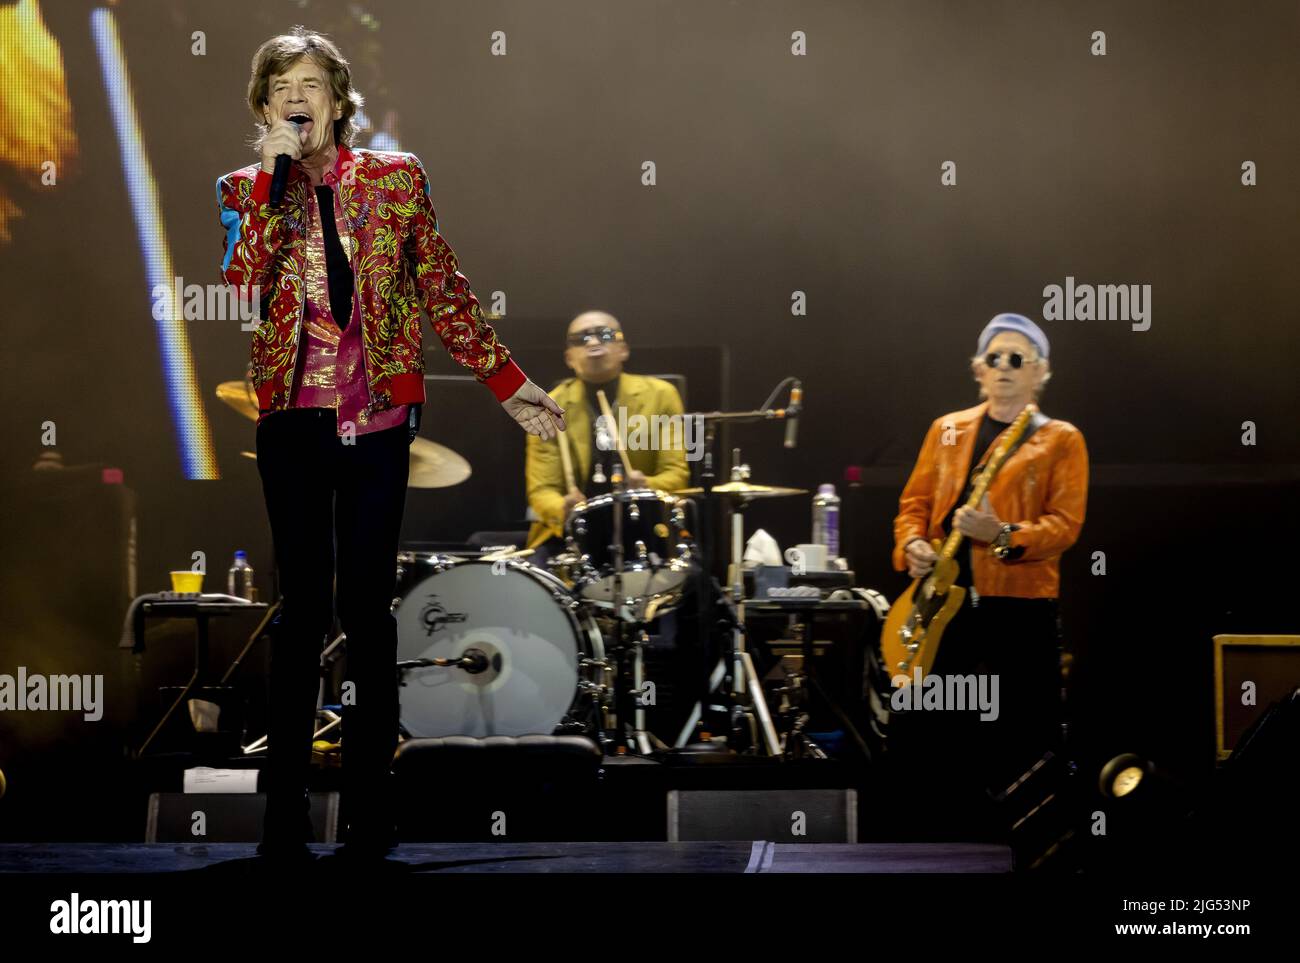 ÁMSTERDAM - 2022-07-07 20:55:36 ÁMSTERDAM - Cantante Mick Jagger durante el concierto de los Rolling Stones en el Johan Cruijff Arena. Con LA gira SESENTA, Mick Jagger, Keith Richards y Ronnie Wood hacen su esperado regreso. ANP KIPPA ROBIN VAN LONKHUIJSEN netherlands Out - belgium Out Foto de stock